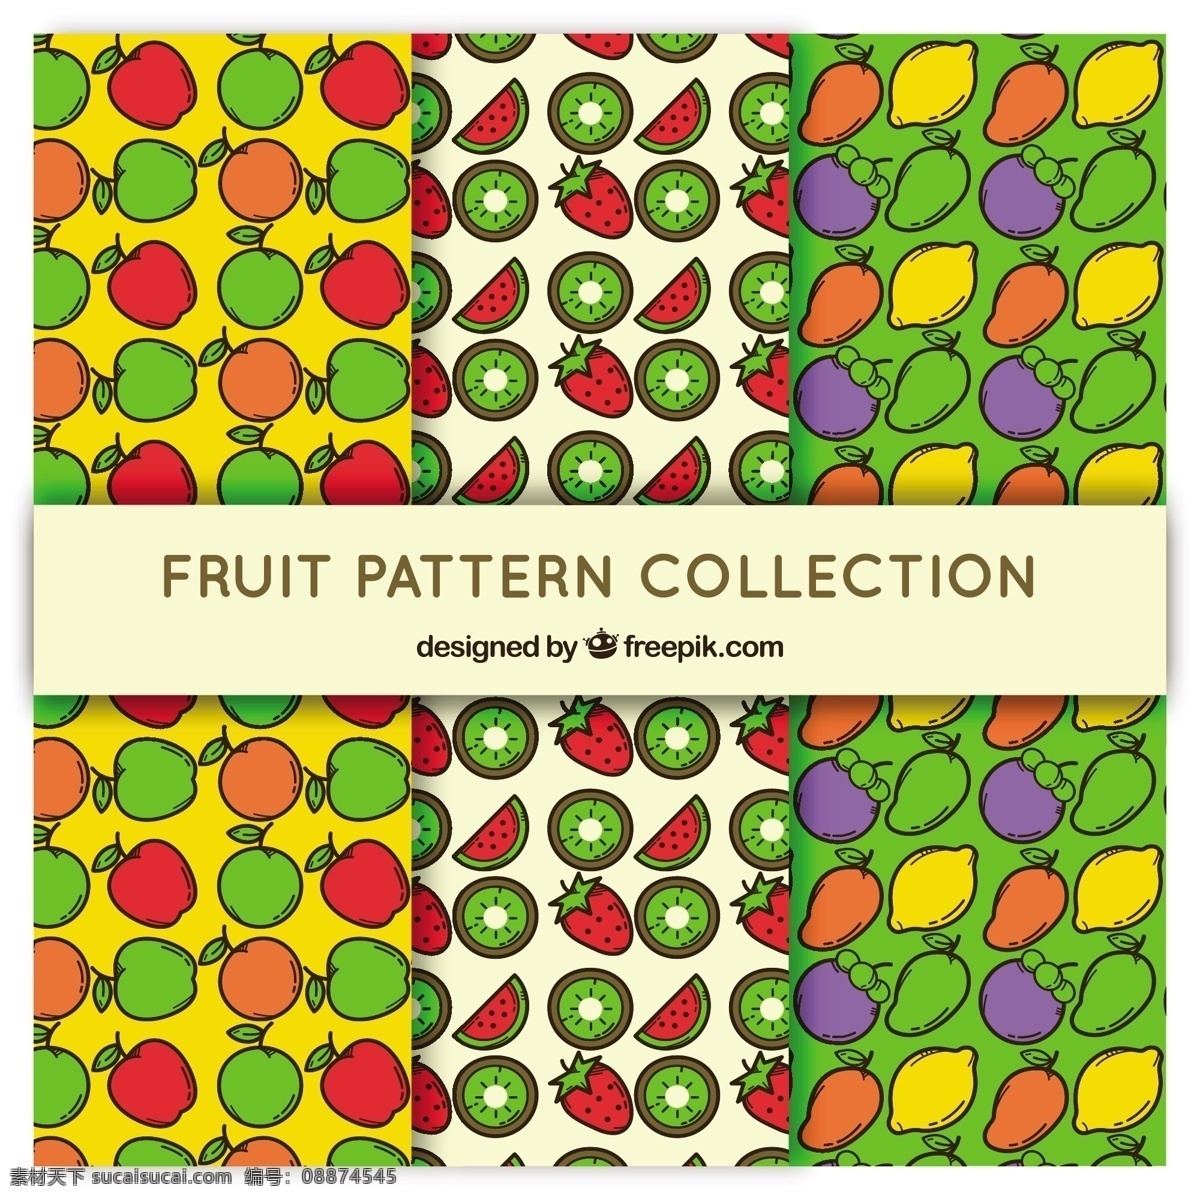 平面设计 颜色 水果 三 种 模式 设置 背景 图案 食物 夏天 热带 苹果 平板 装饰 丰富多彩 无缝的图案 自然 健康 平的设计 草莓